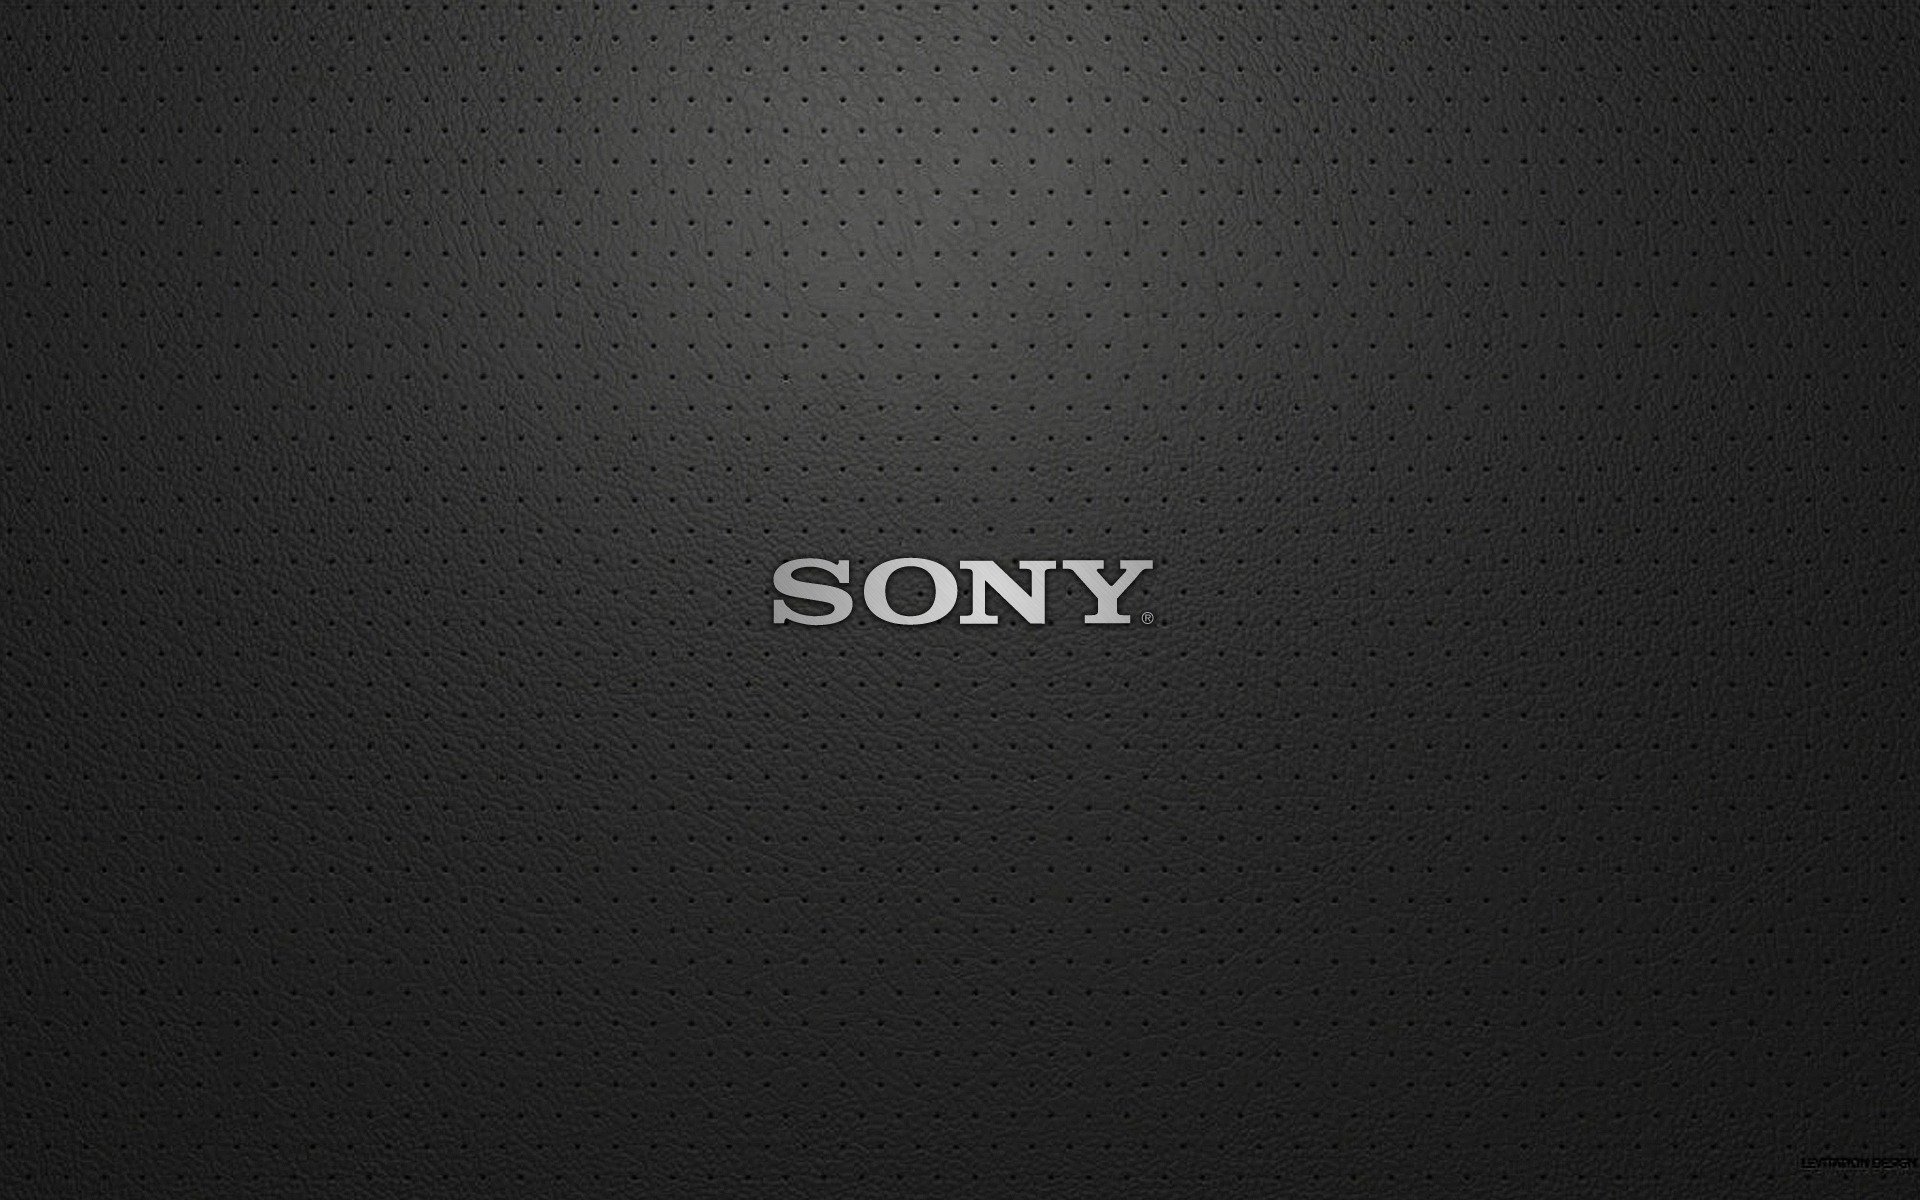 Sony VAIO 1080